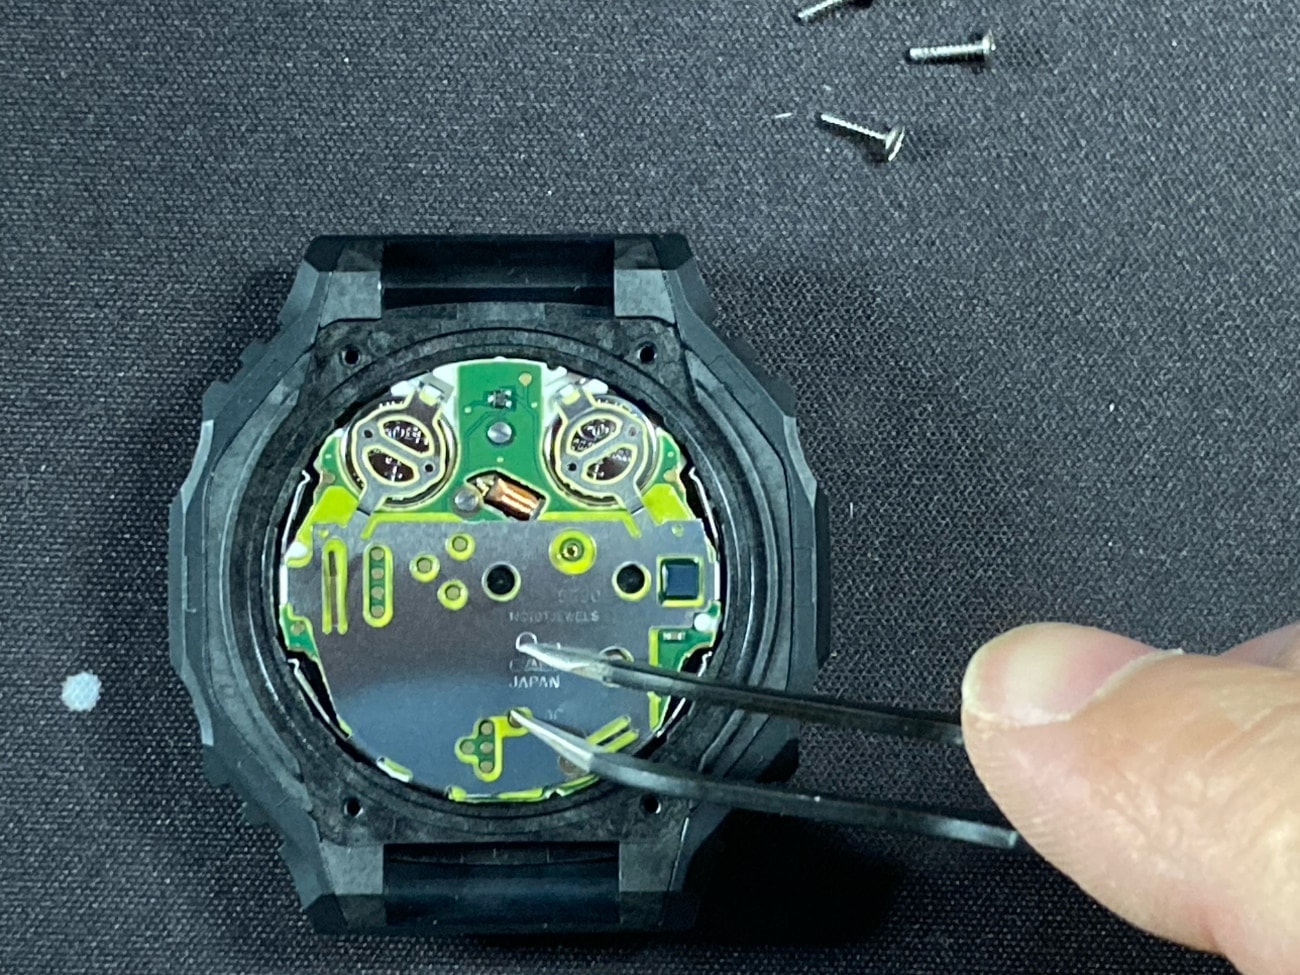 Cambio de pila en el Casio G-Shock GA-2100: Después del reemplazo de la batería, ponga en contacto AC con (-) usando unas pinzas